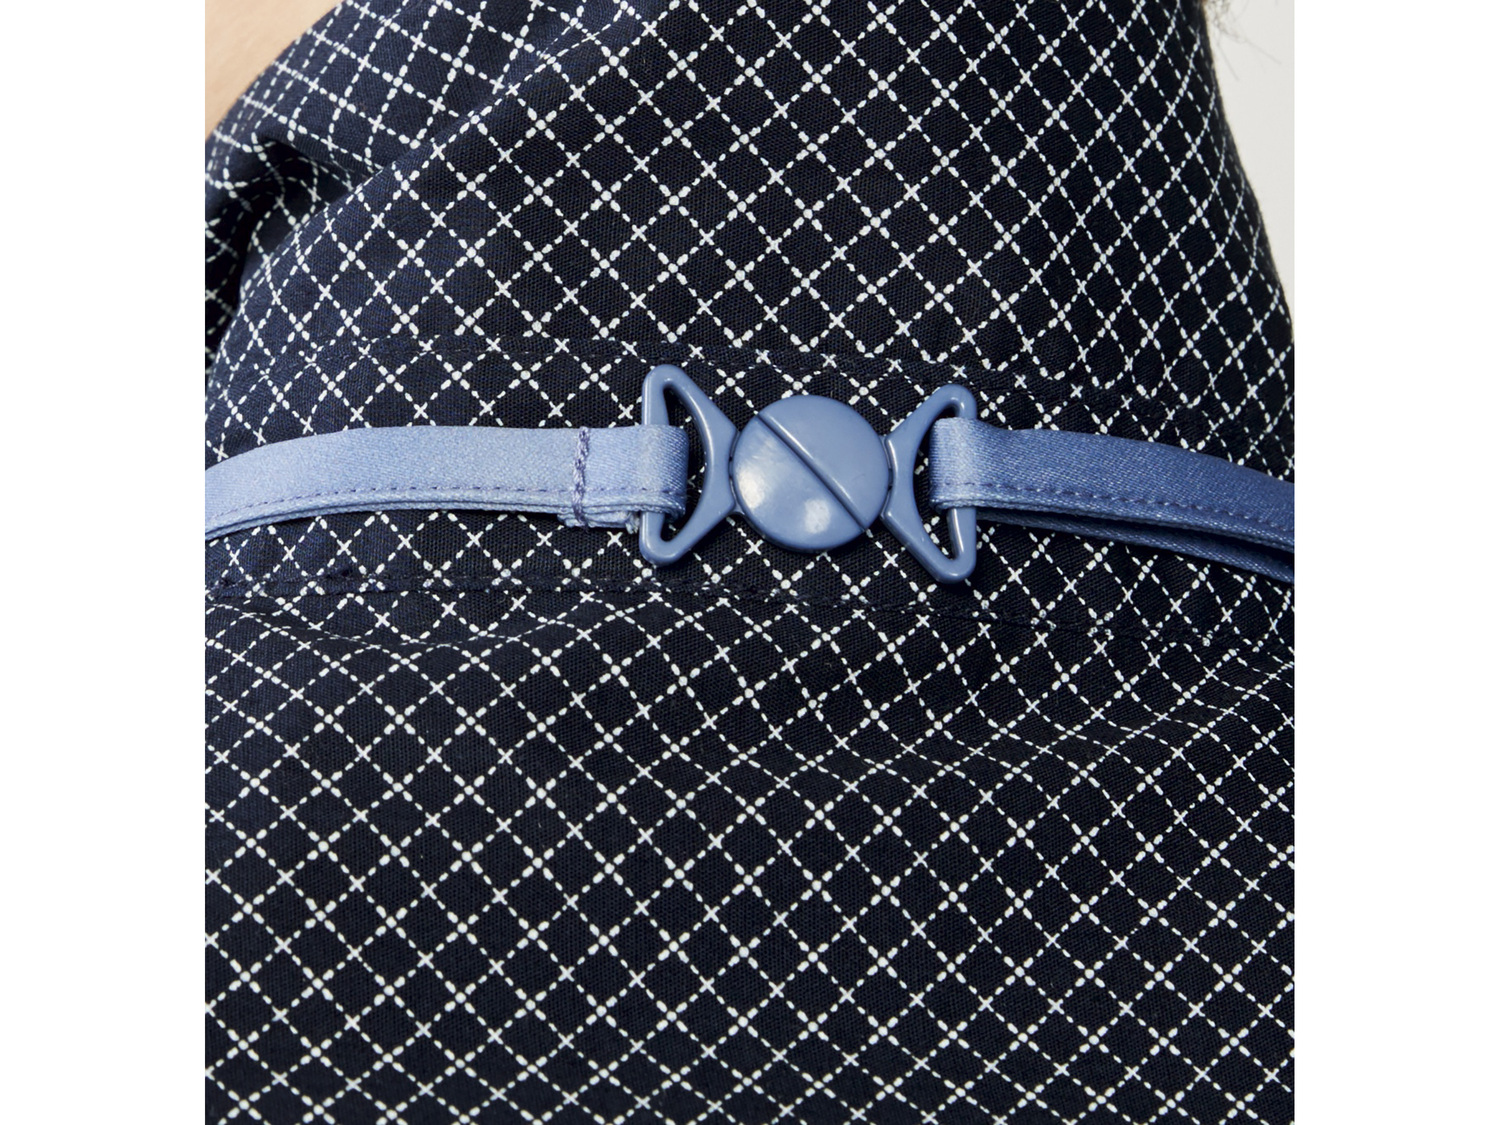 Koszula chłopięca z krawatem Pepperts, cena 29,99 PLN 
- koszula: 100% bawełny, ...